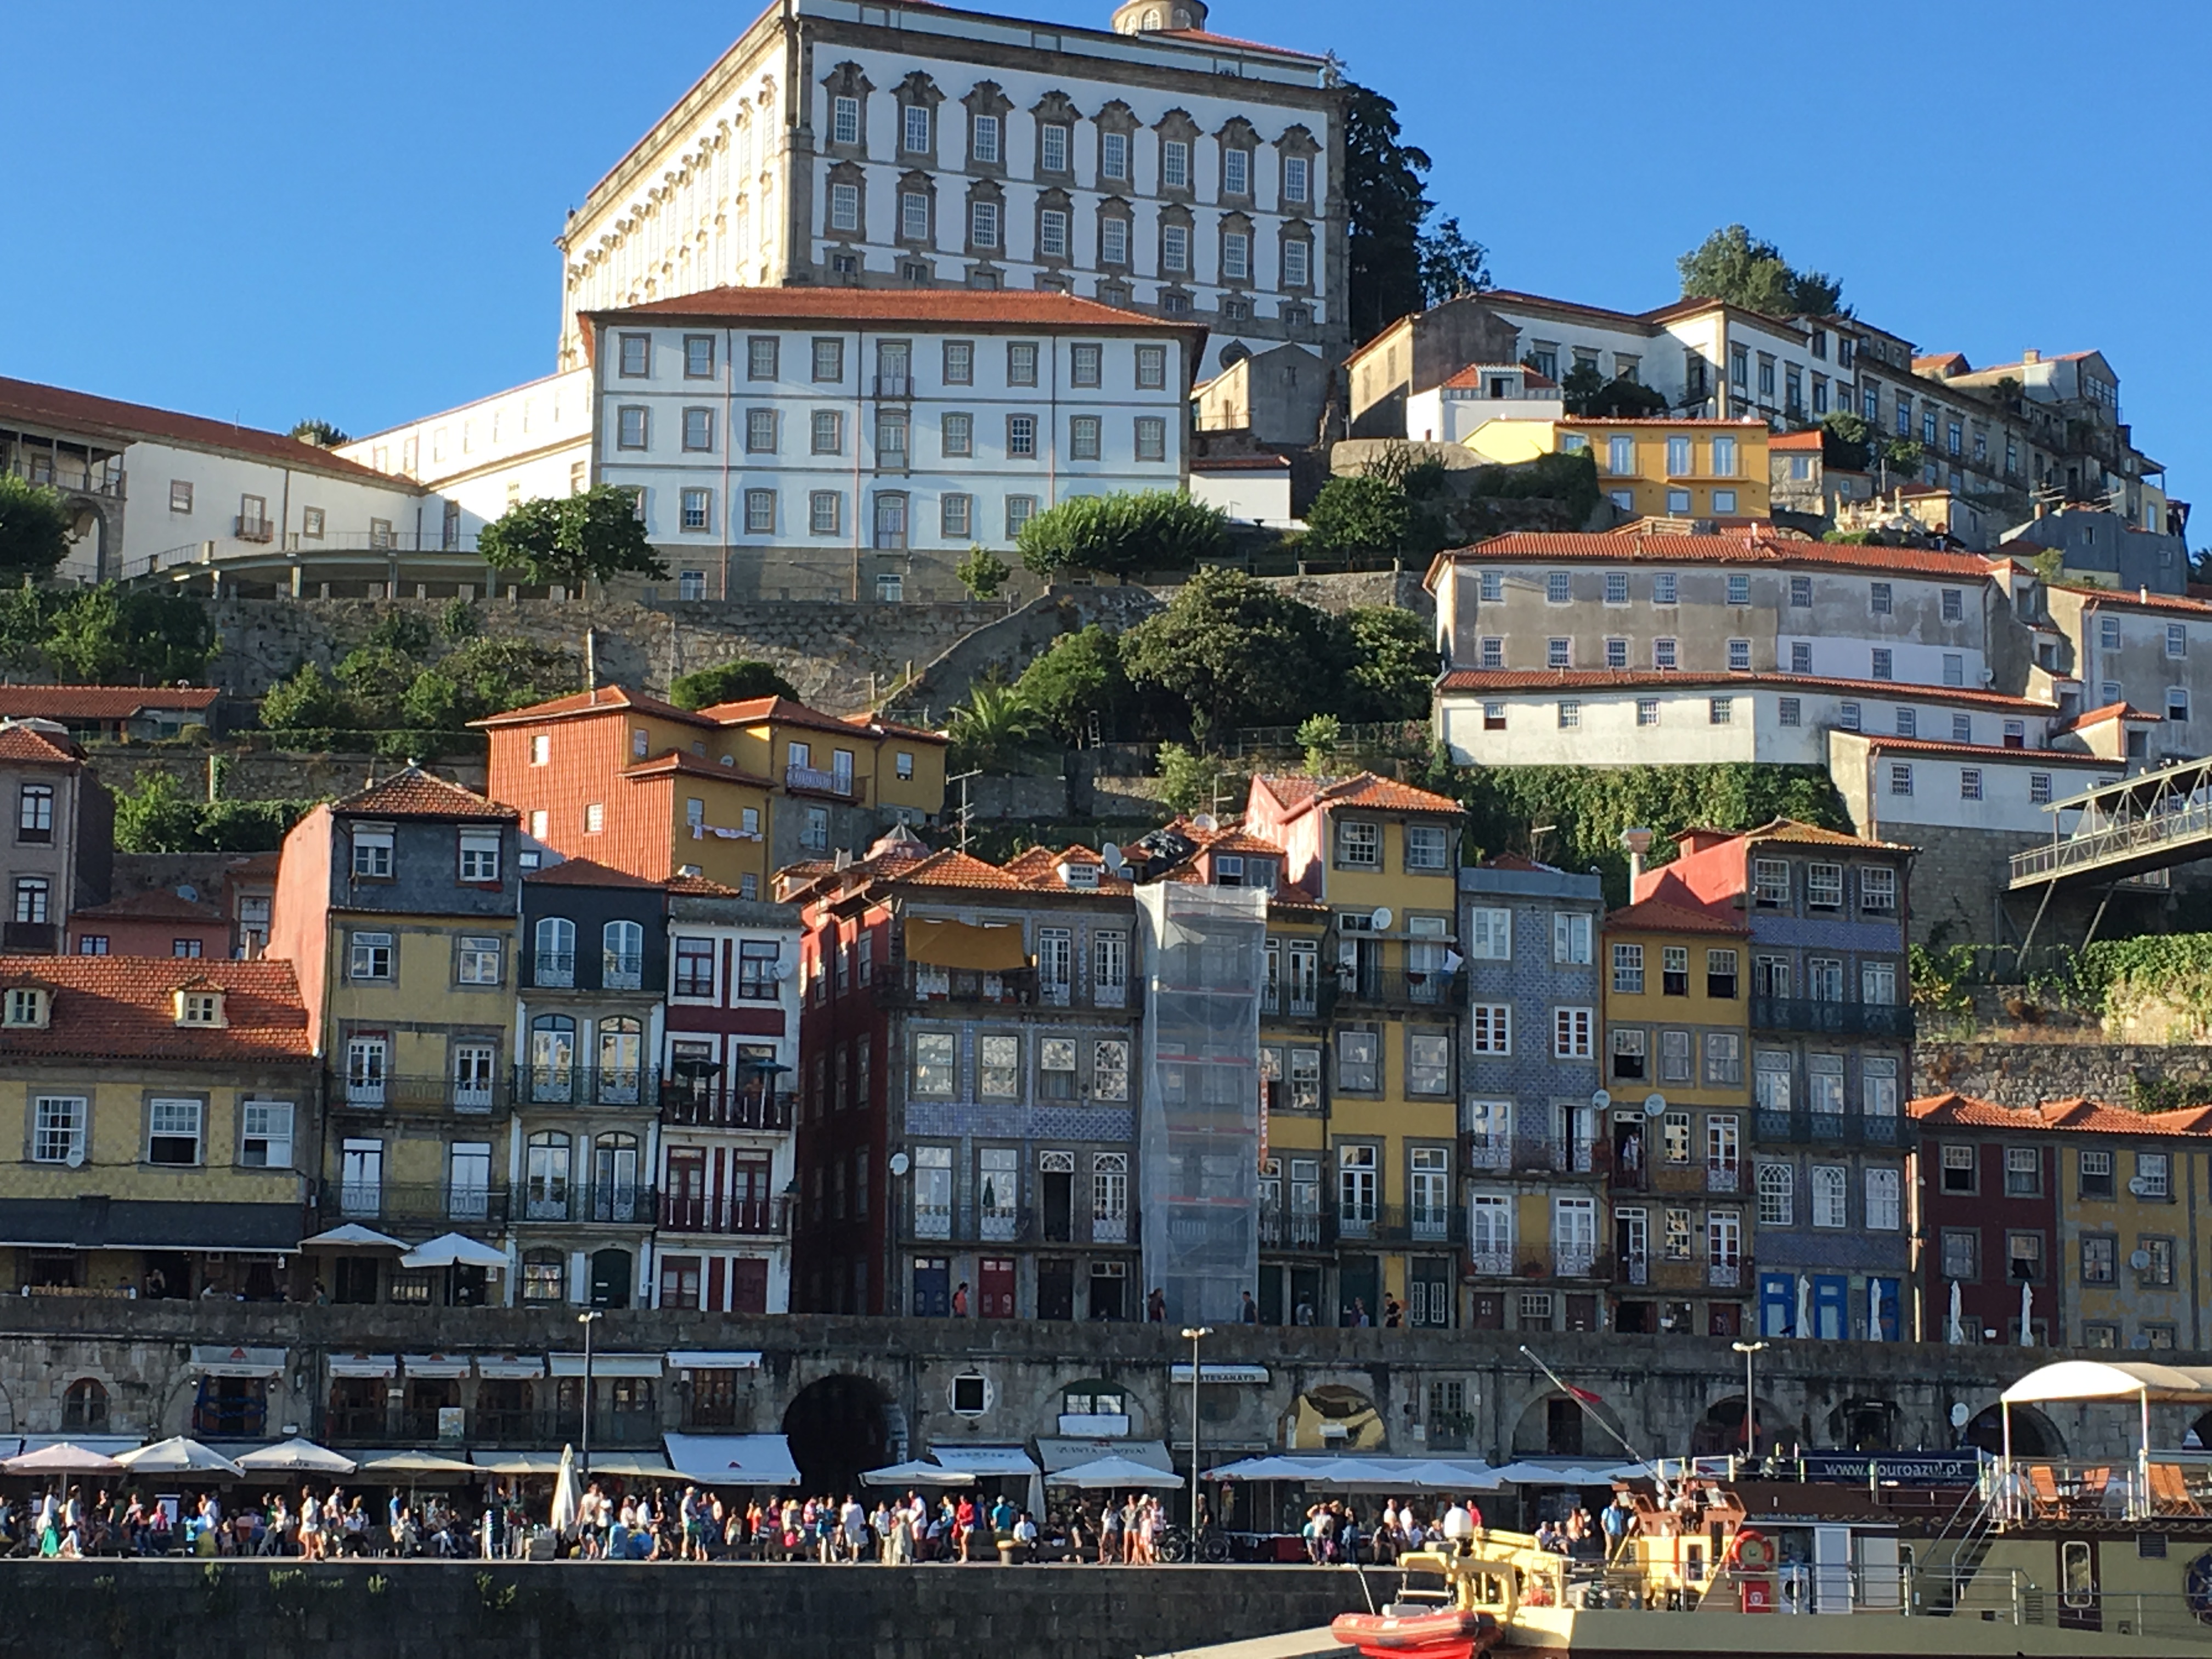 Ribeira District of Porto on the Douro River